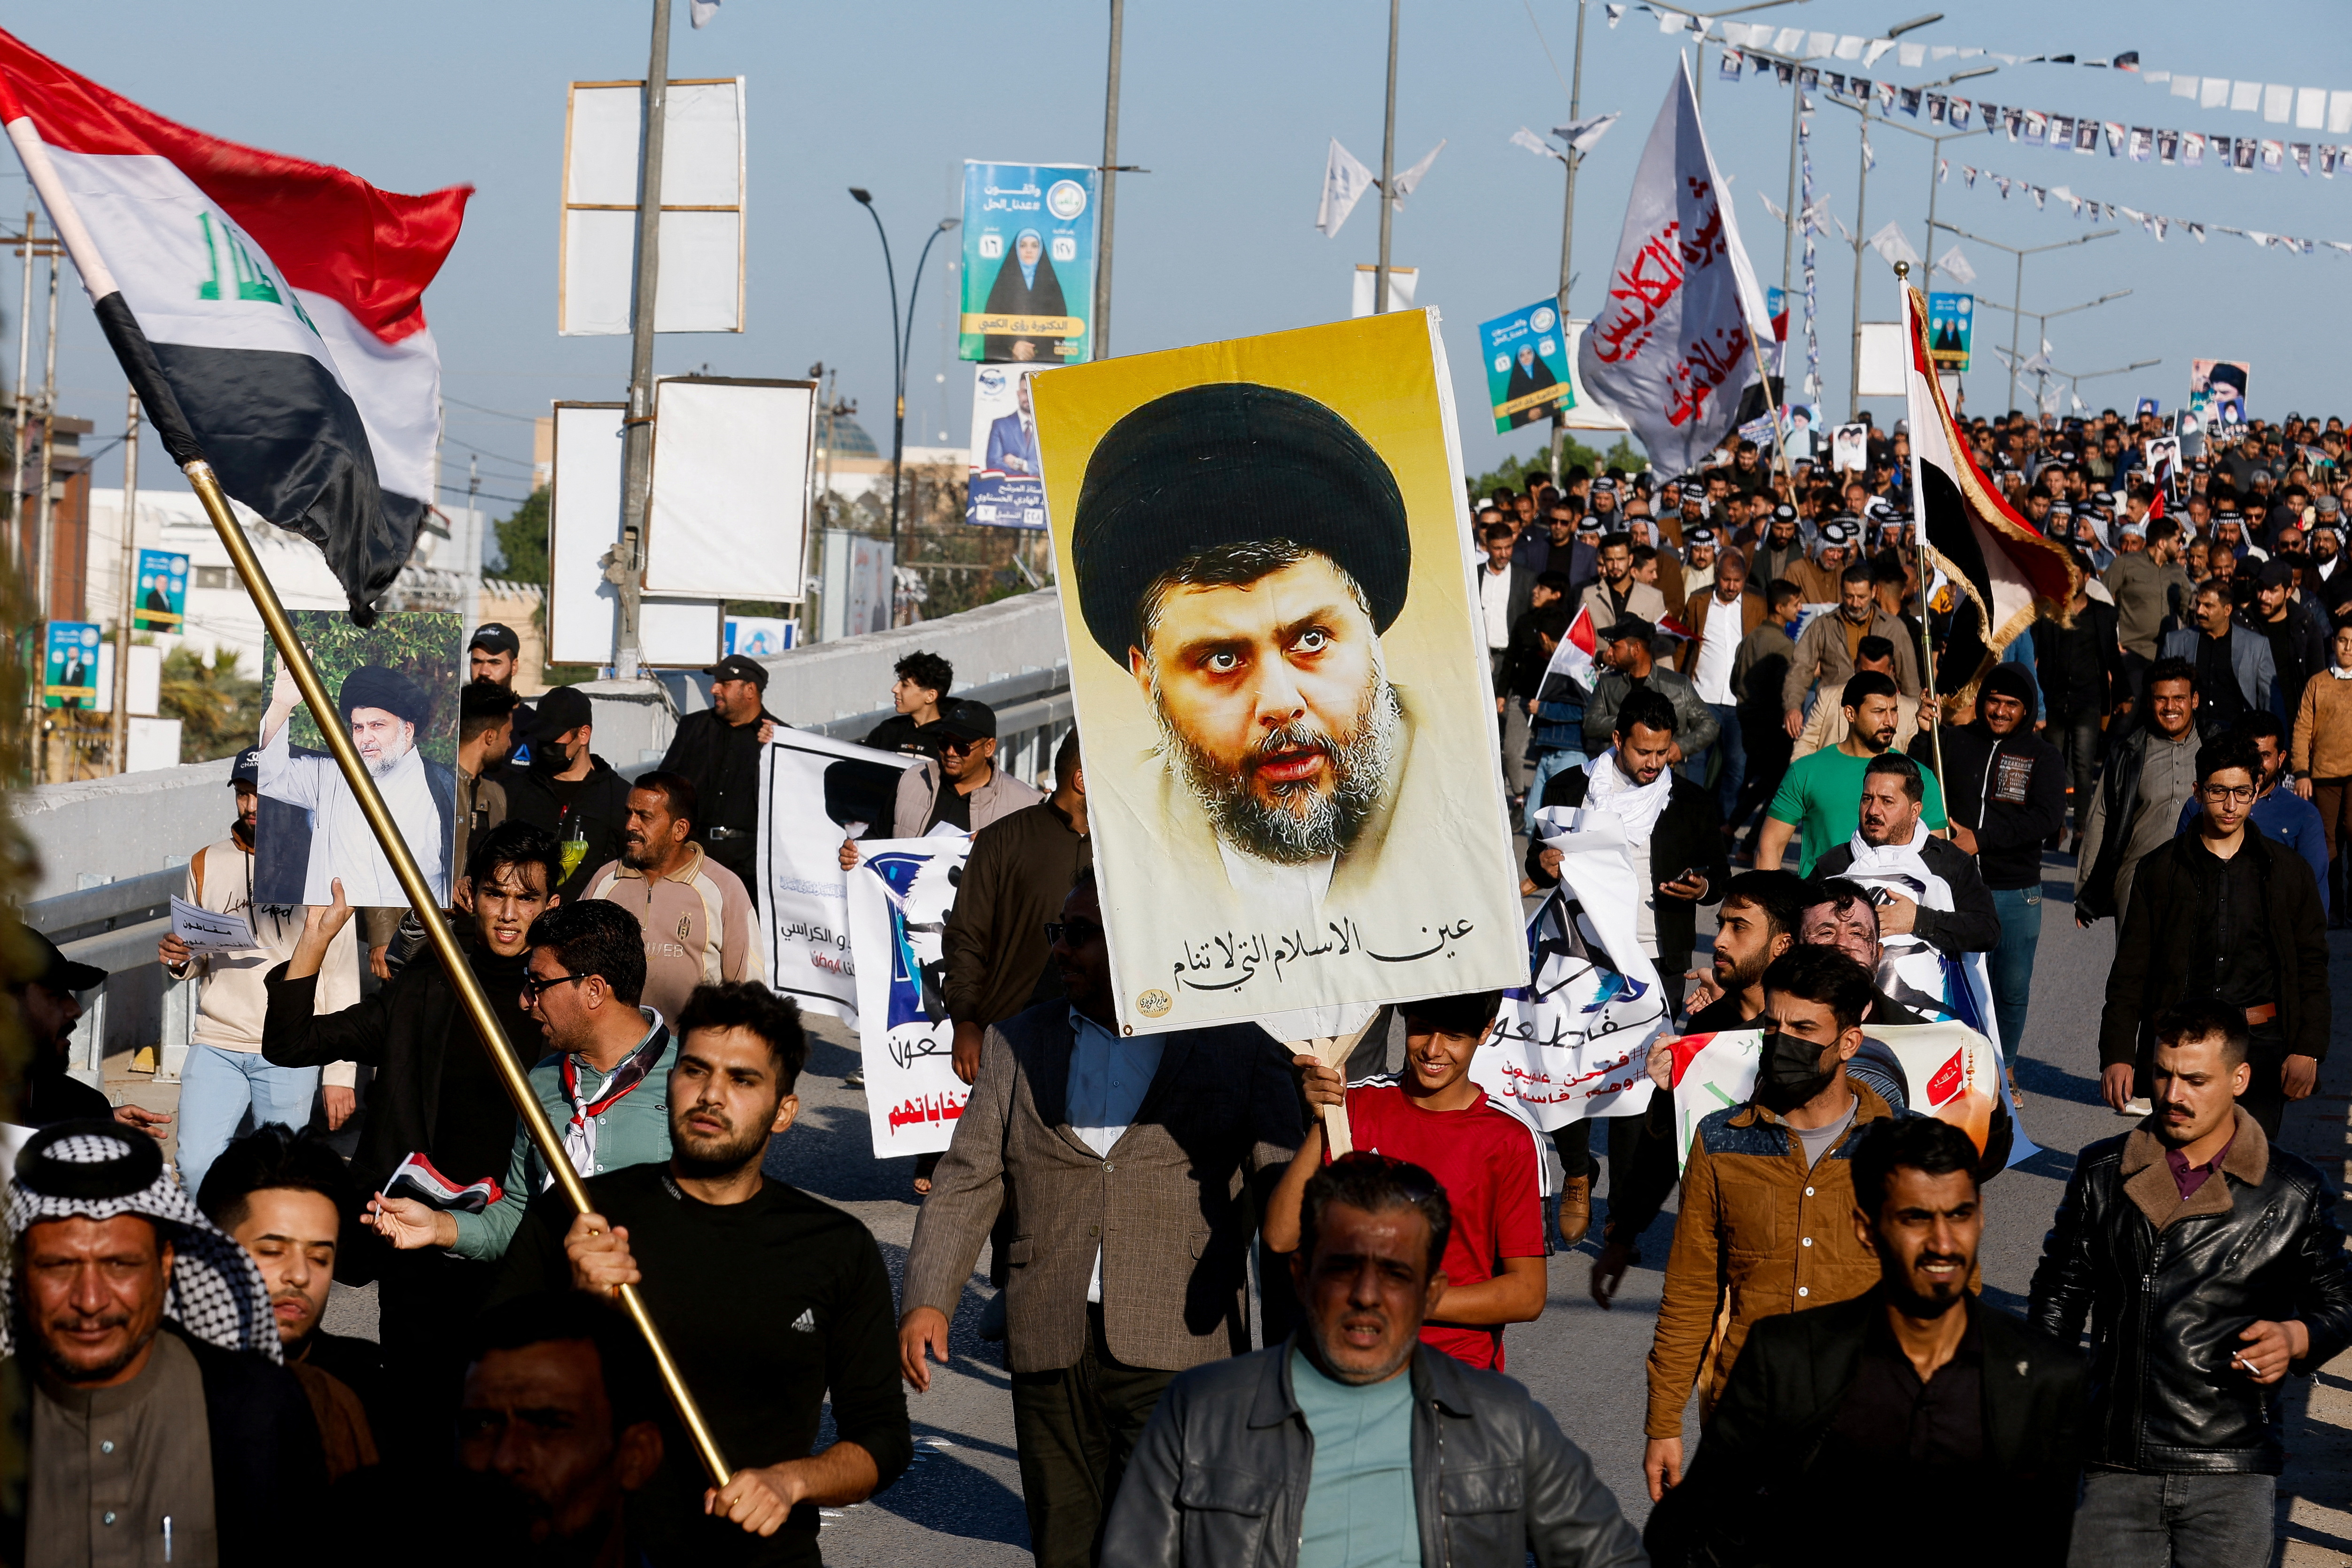 イラクのシーア派有力者サドル師、来年議会選での政界復帰視野か